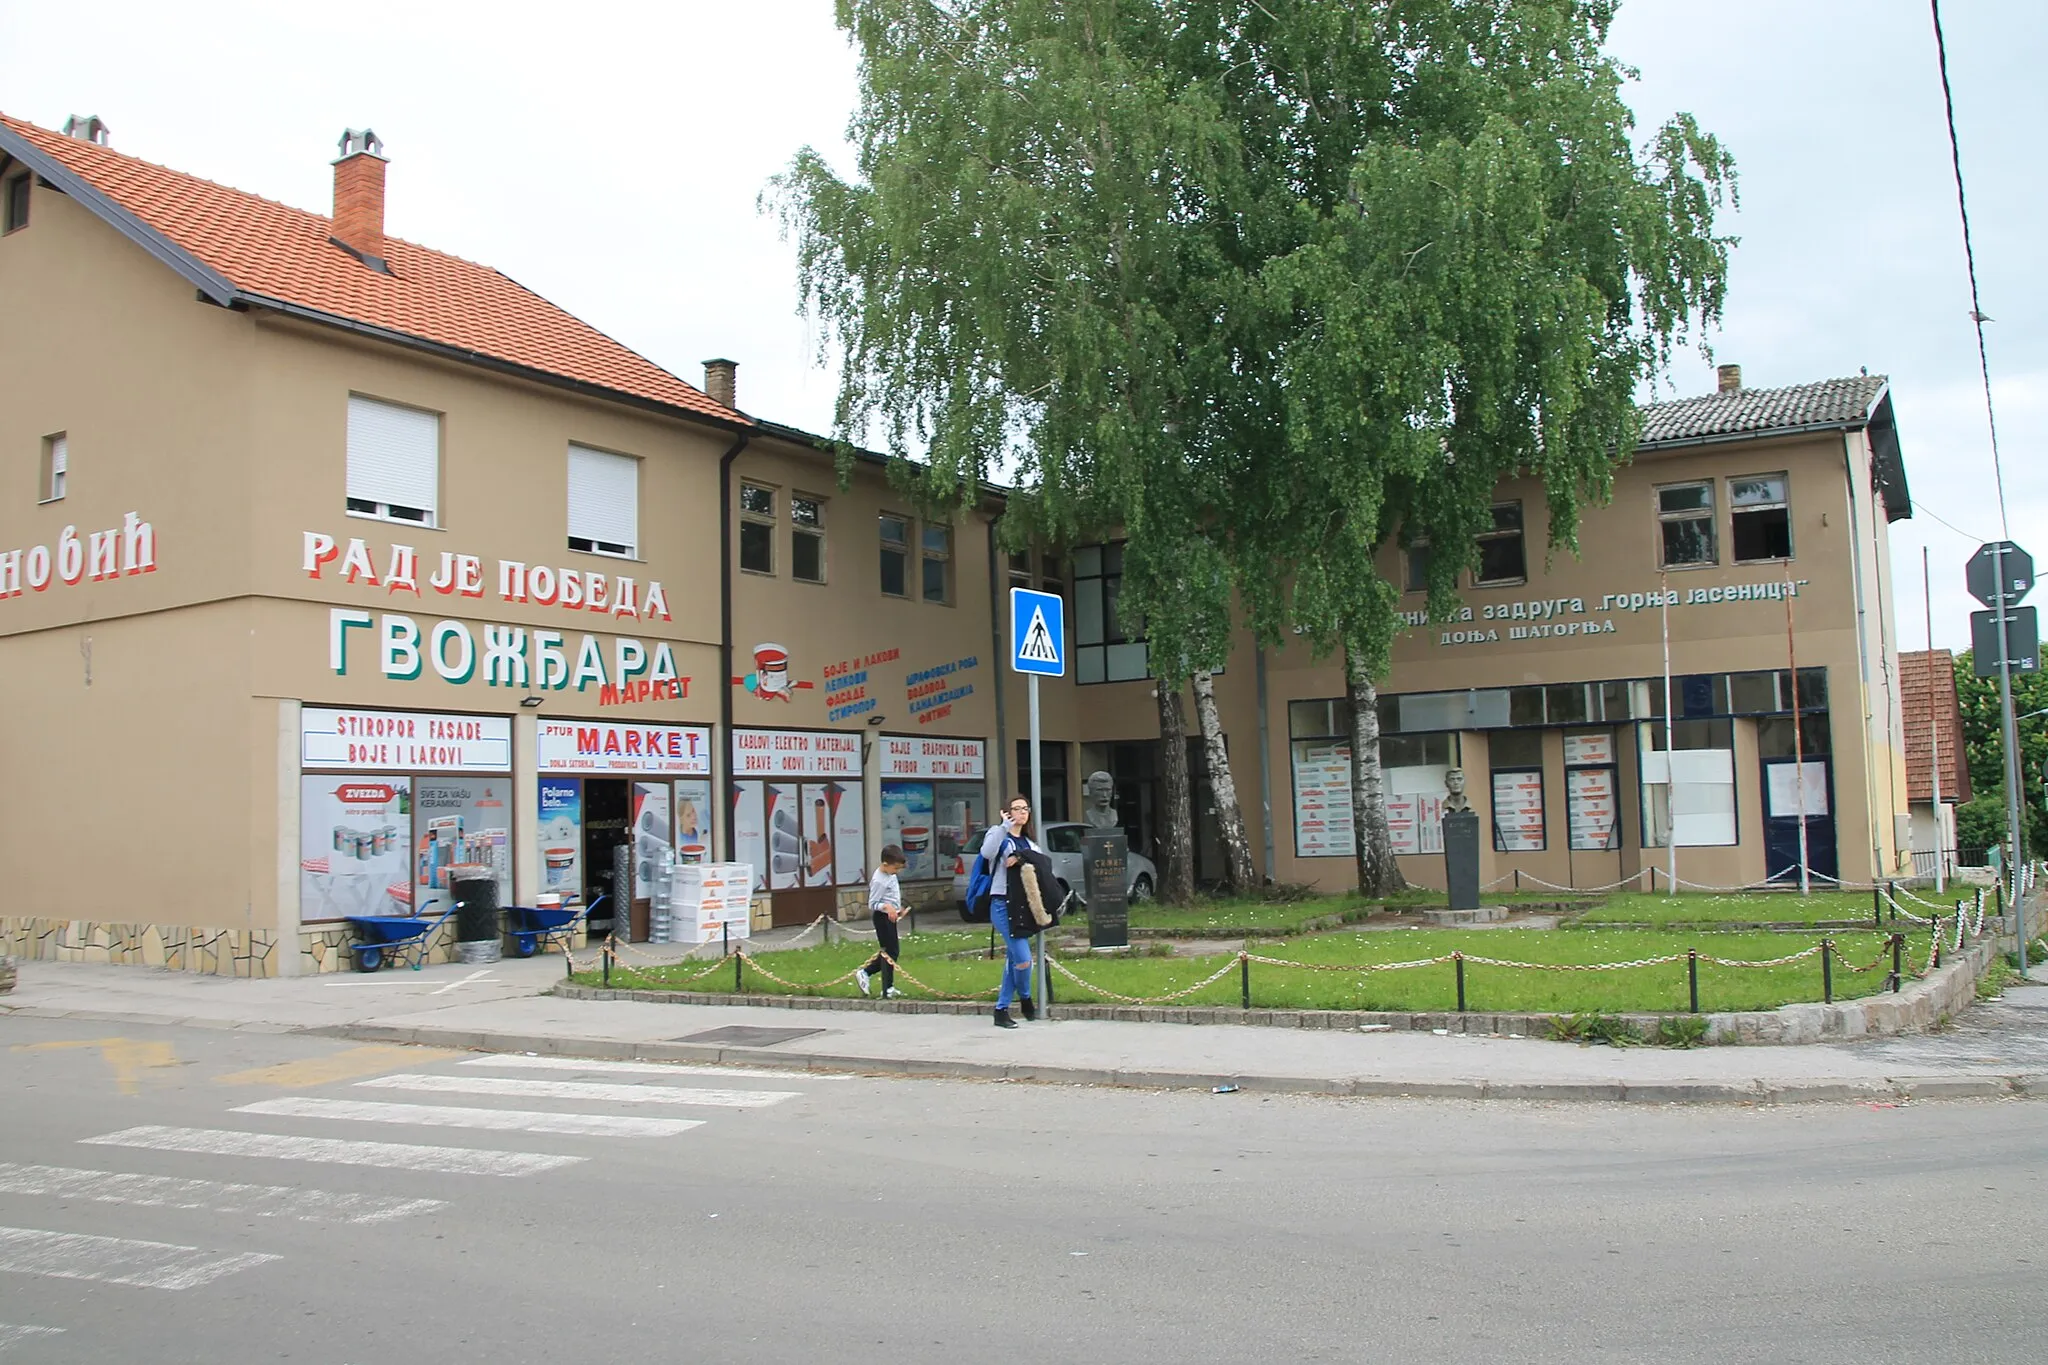 Photo showing: Donja Šatornja